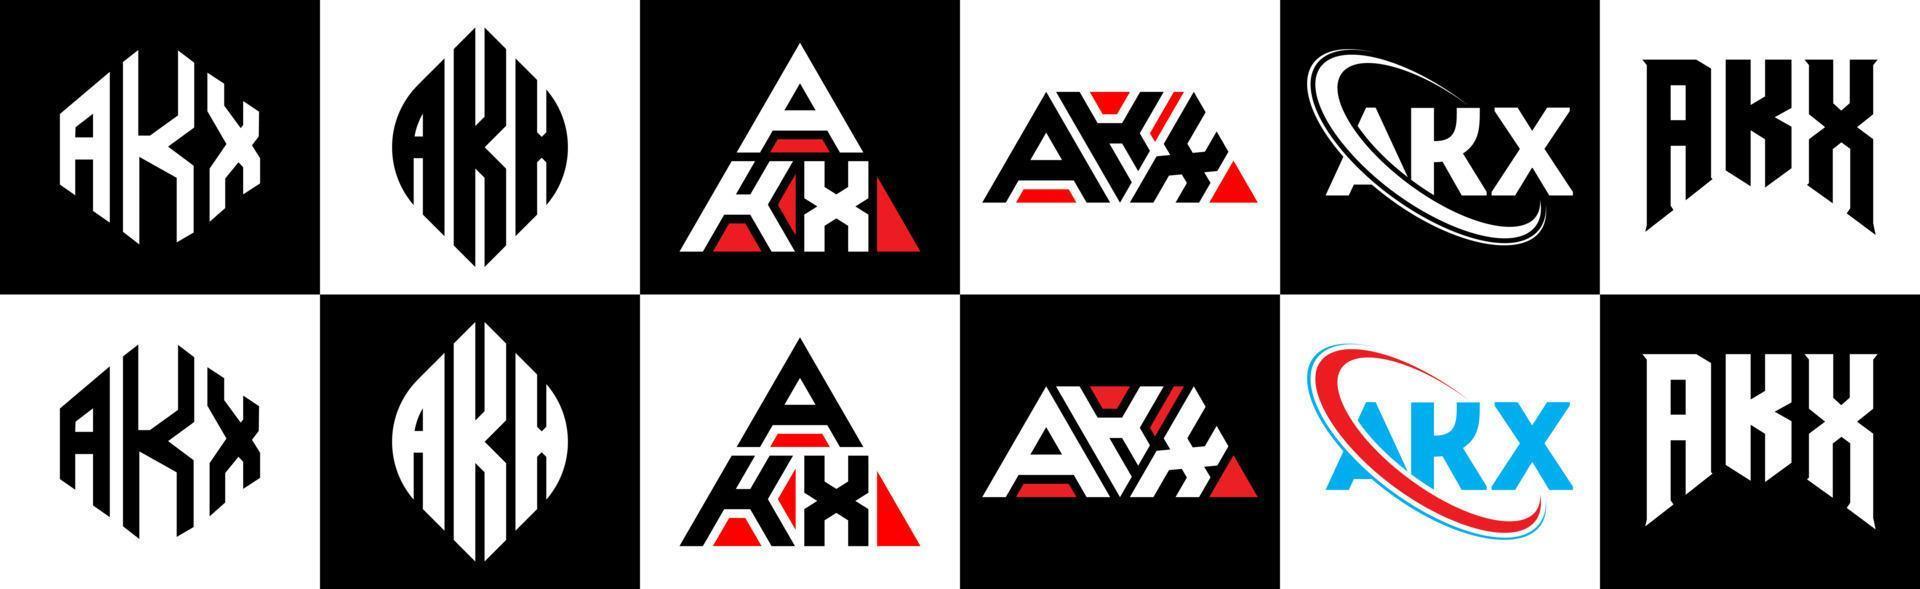 création de logo de lettre akx en six styles. akx polygone, cercle, triangle, hexagone, style plat et simple avec logo de lettre de variation de couleur noir et blanc dans un plan de travail. logo minimaliste et classique akx vecteur